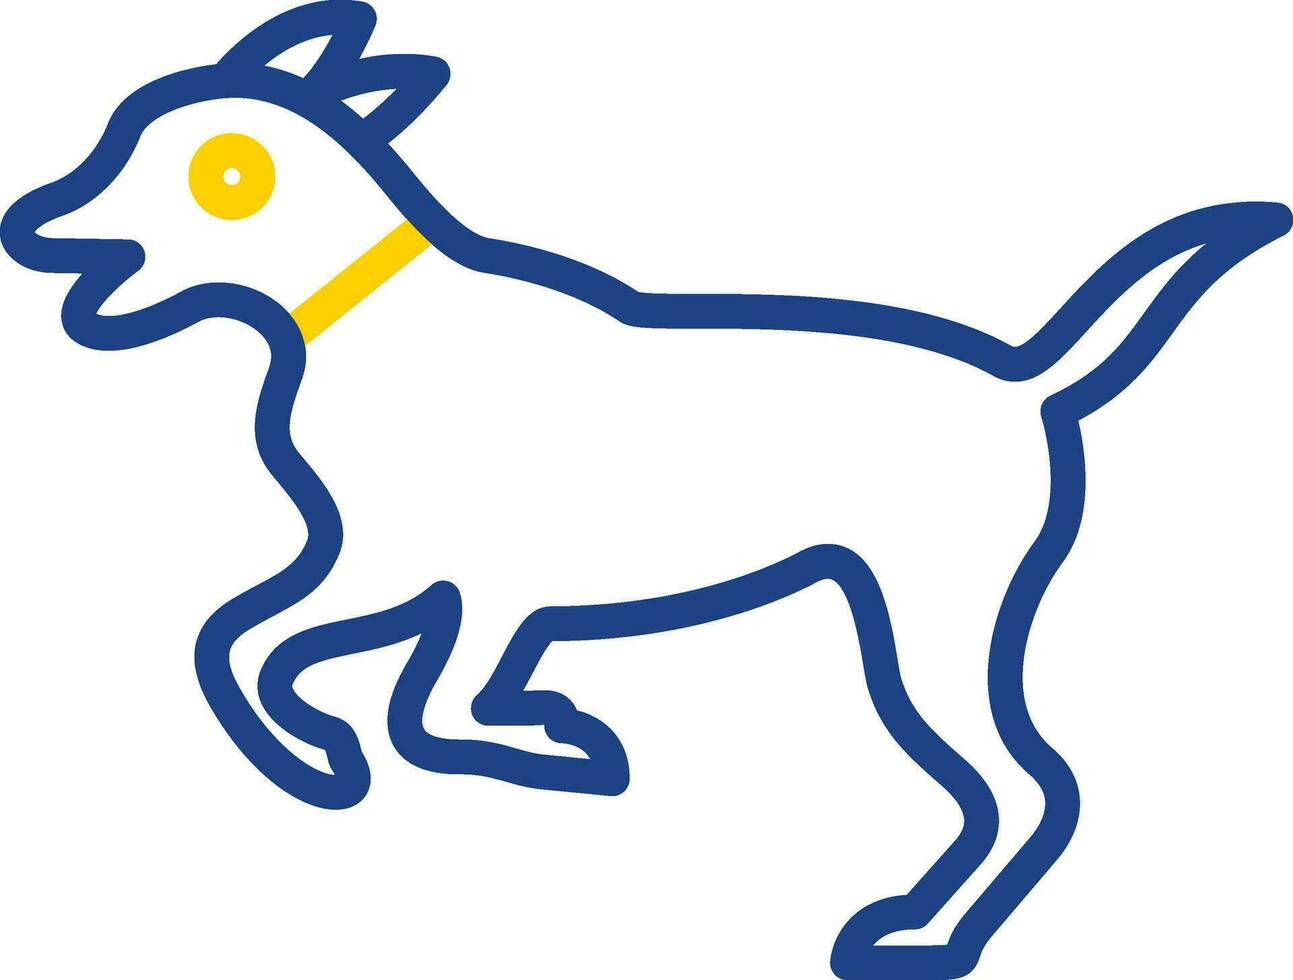 design de ícone de vetor de cachorro